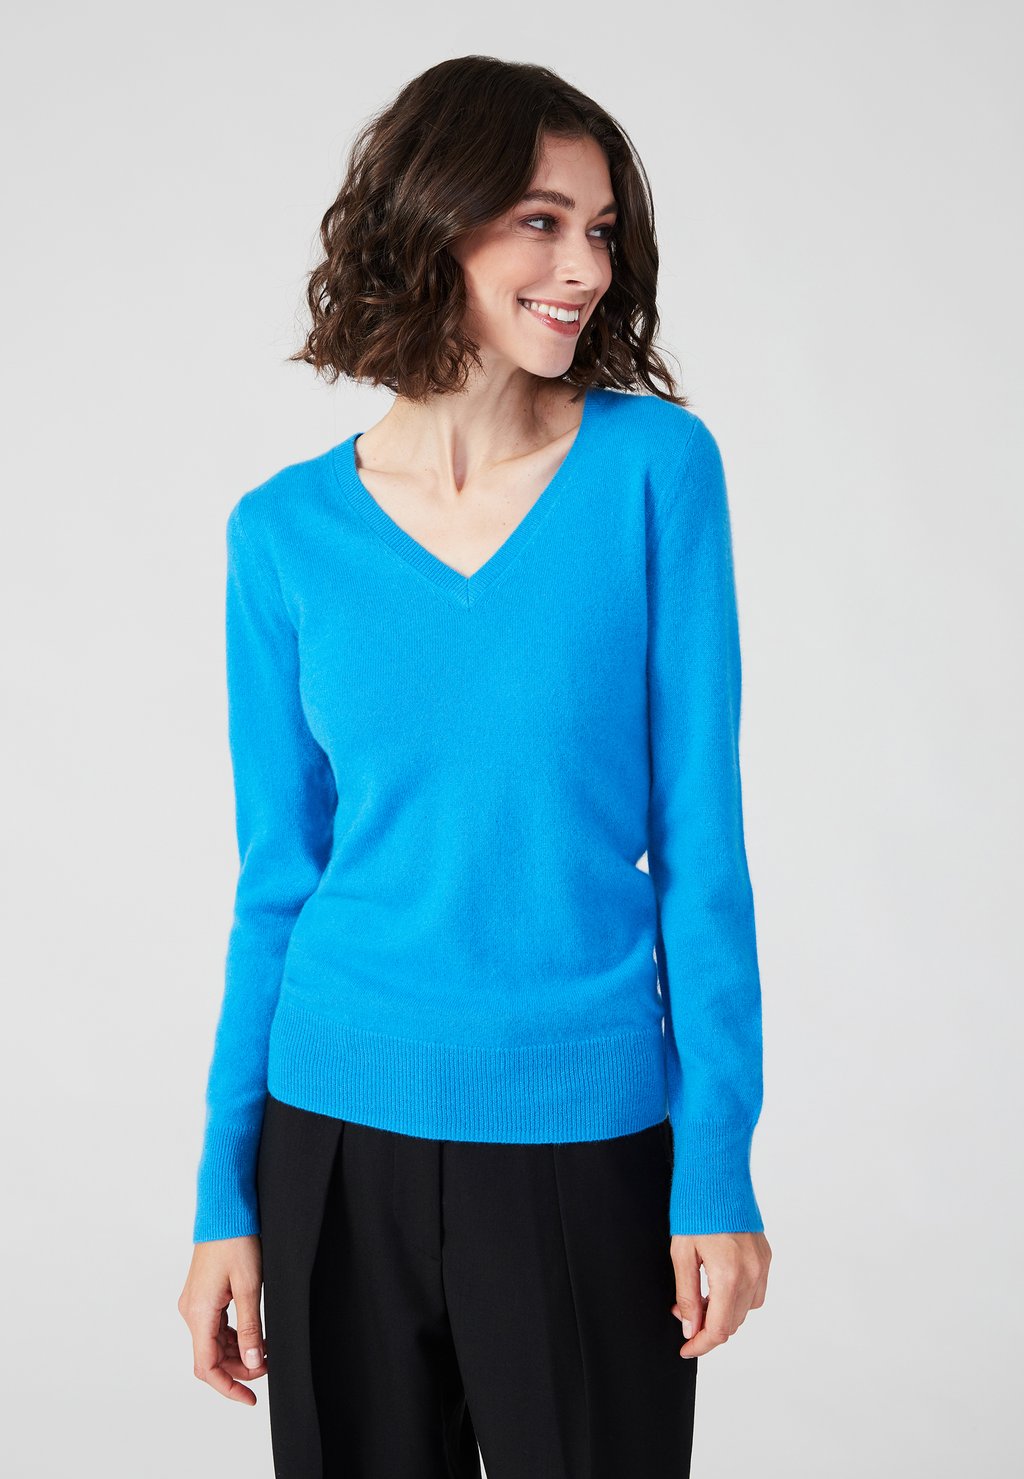 вязаный свитер v neck style republic цвет fancy blue Вязаный свитер V NECK Style Republic, цвет fancy blue